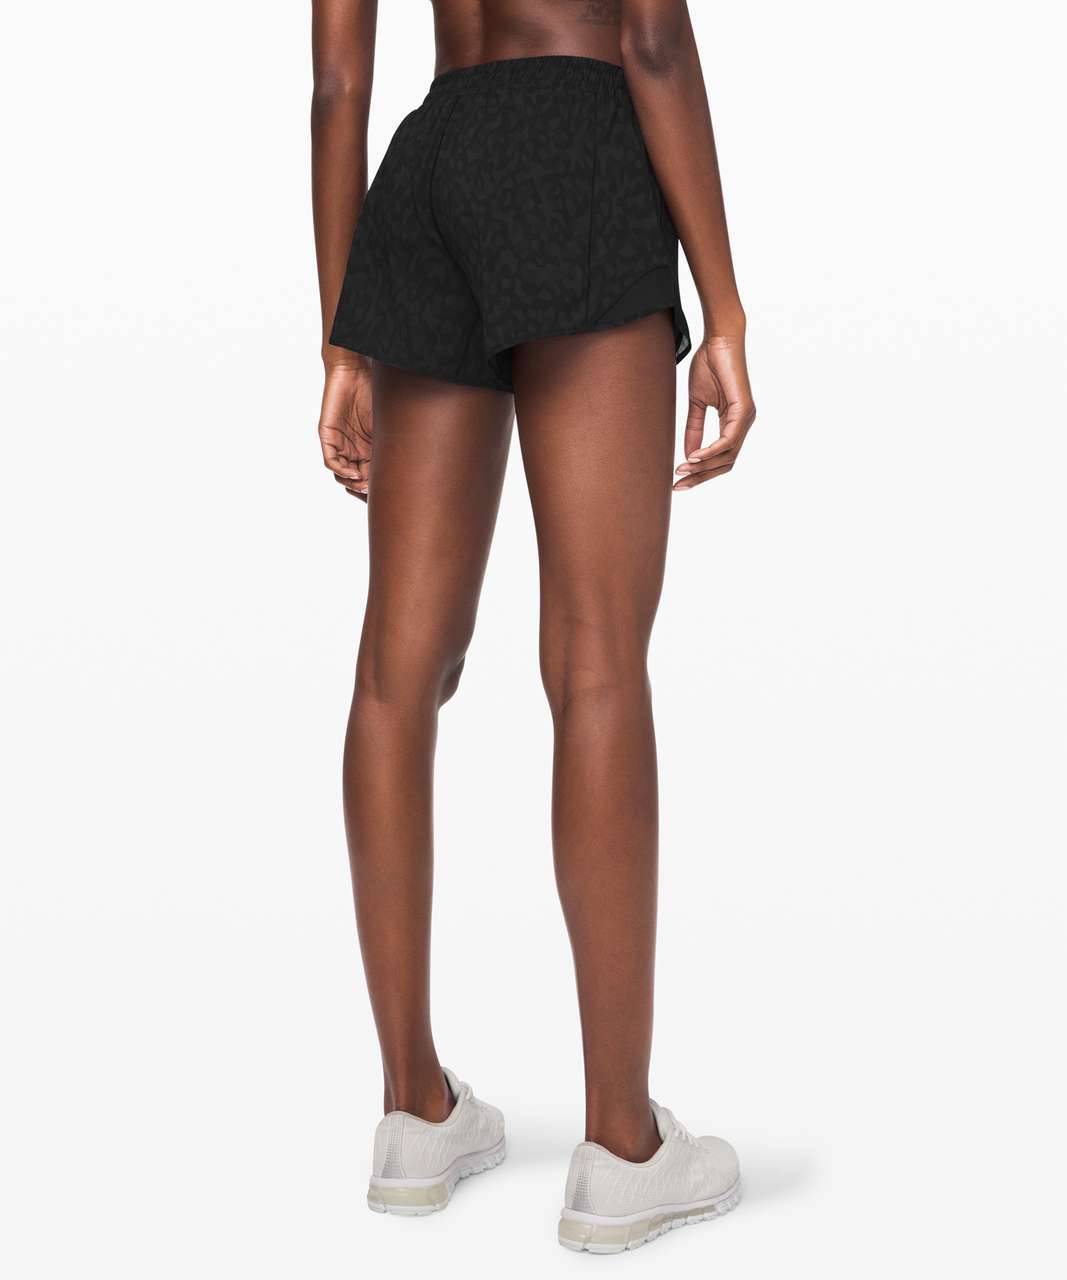 lululemon athletica, Shorts, Lululemon Black Hotty Hot Shorts Size 2